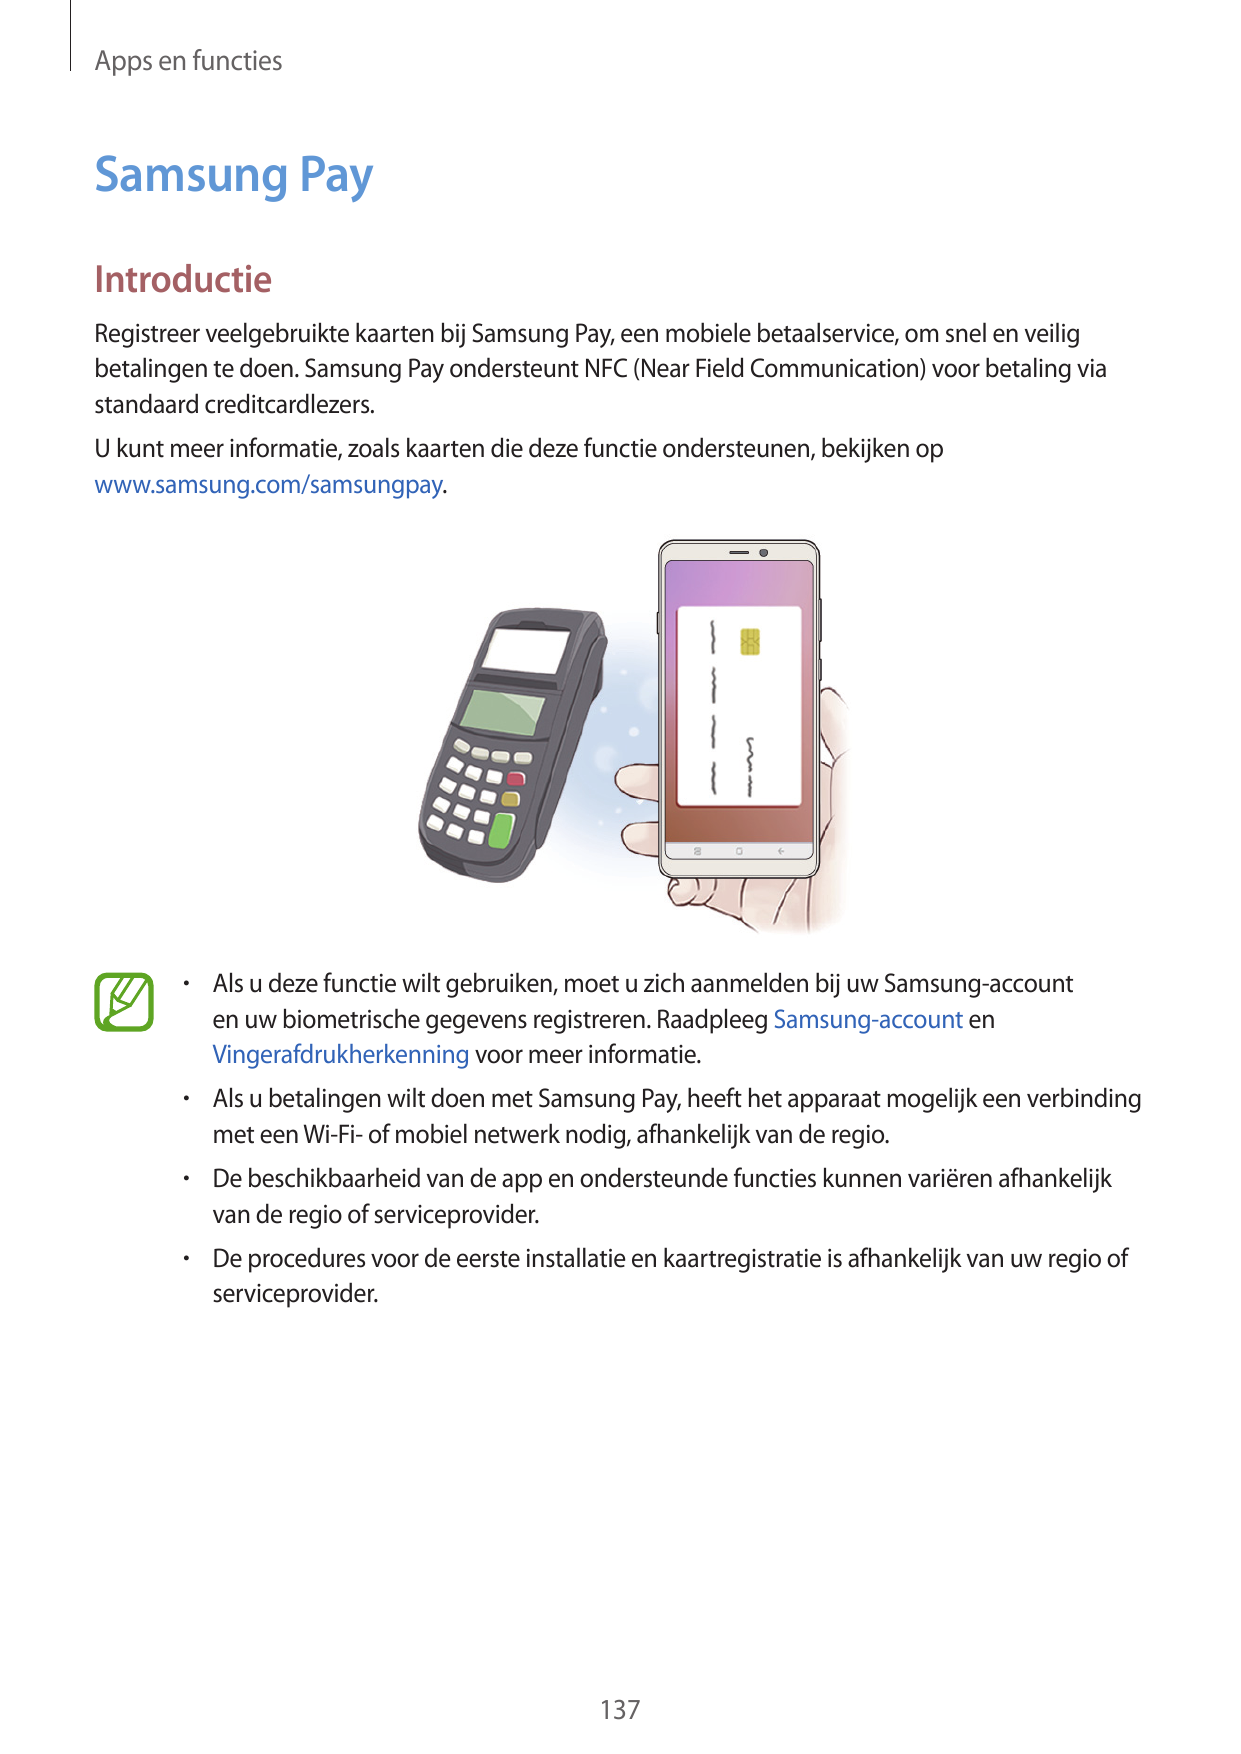 Apps en functiesSamsung PayIntroductieRegistreer veelgebruikte kaarten bij Samsung Pay, een mobiele betaalservice, om snel en ve